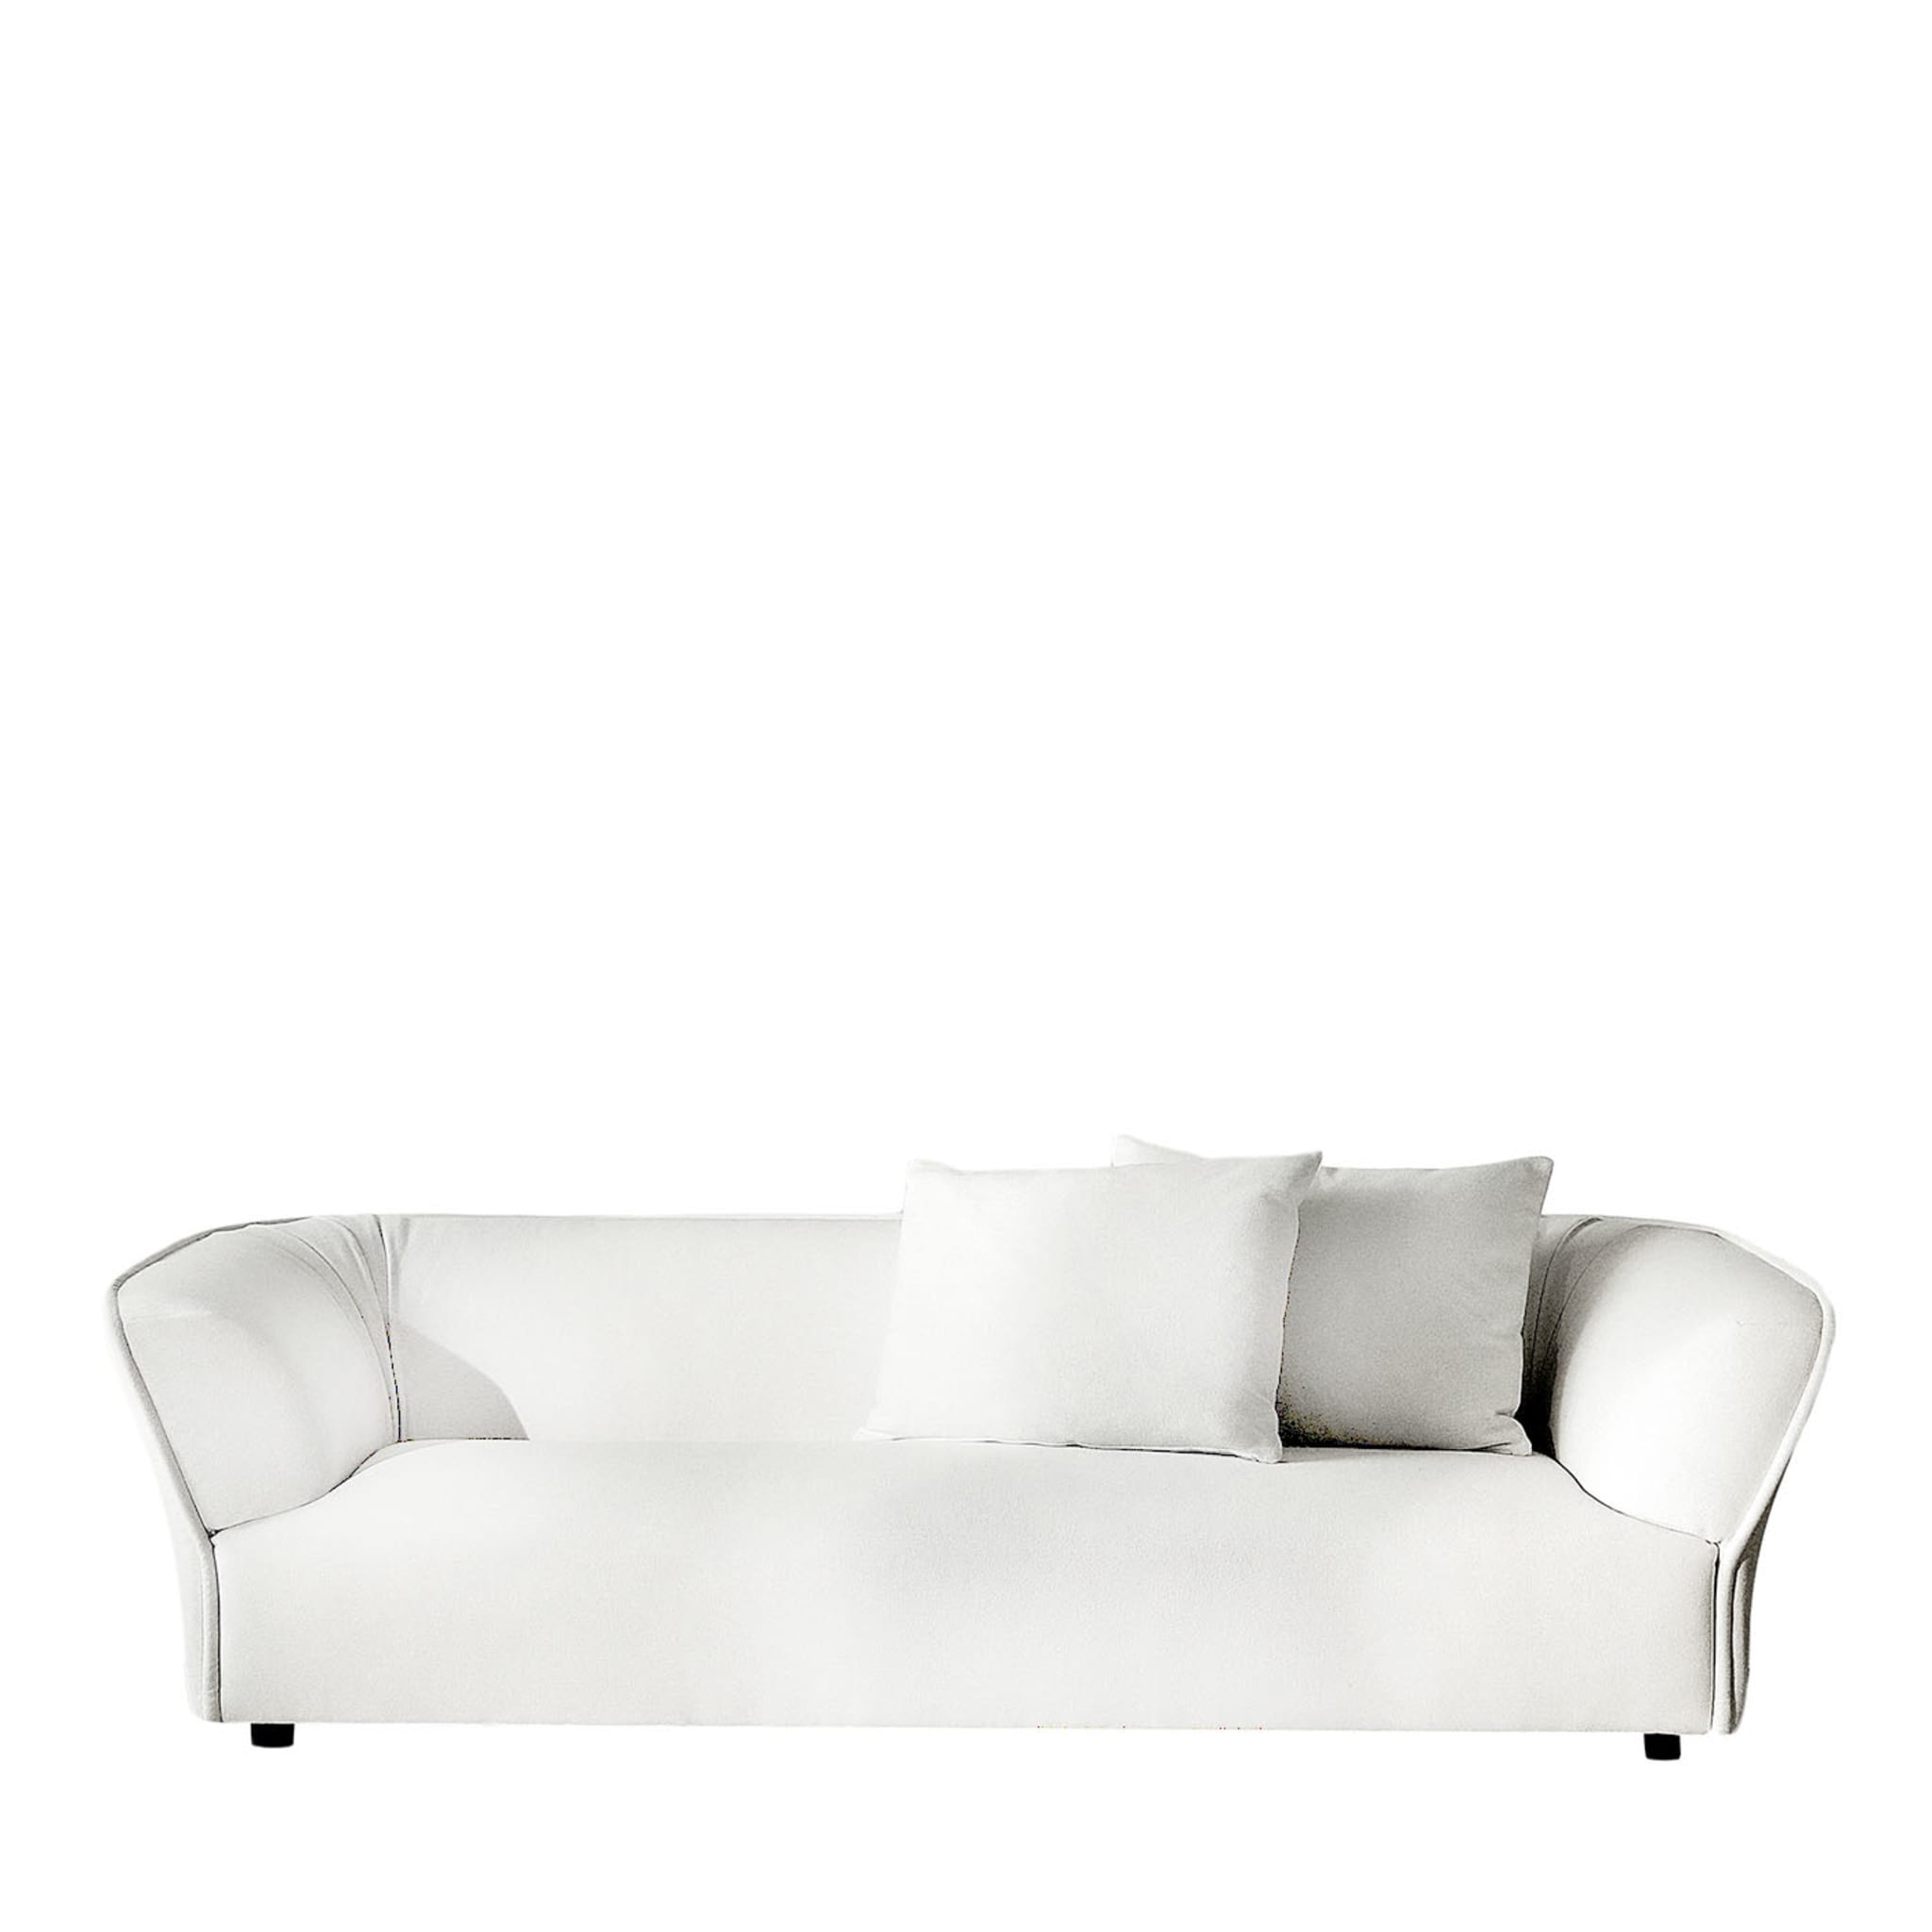 Florence 3-sitziges modulares weißes sofa von Ludovica + Roberto Palomba - Hauptansicht